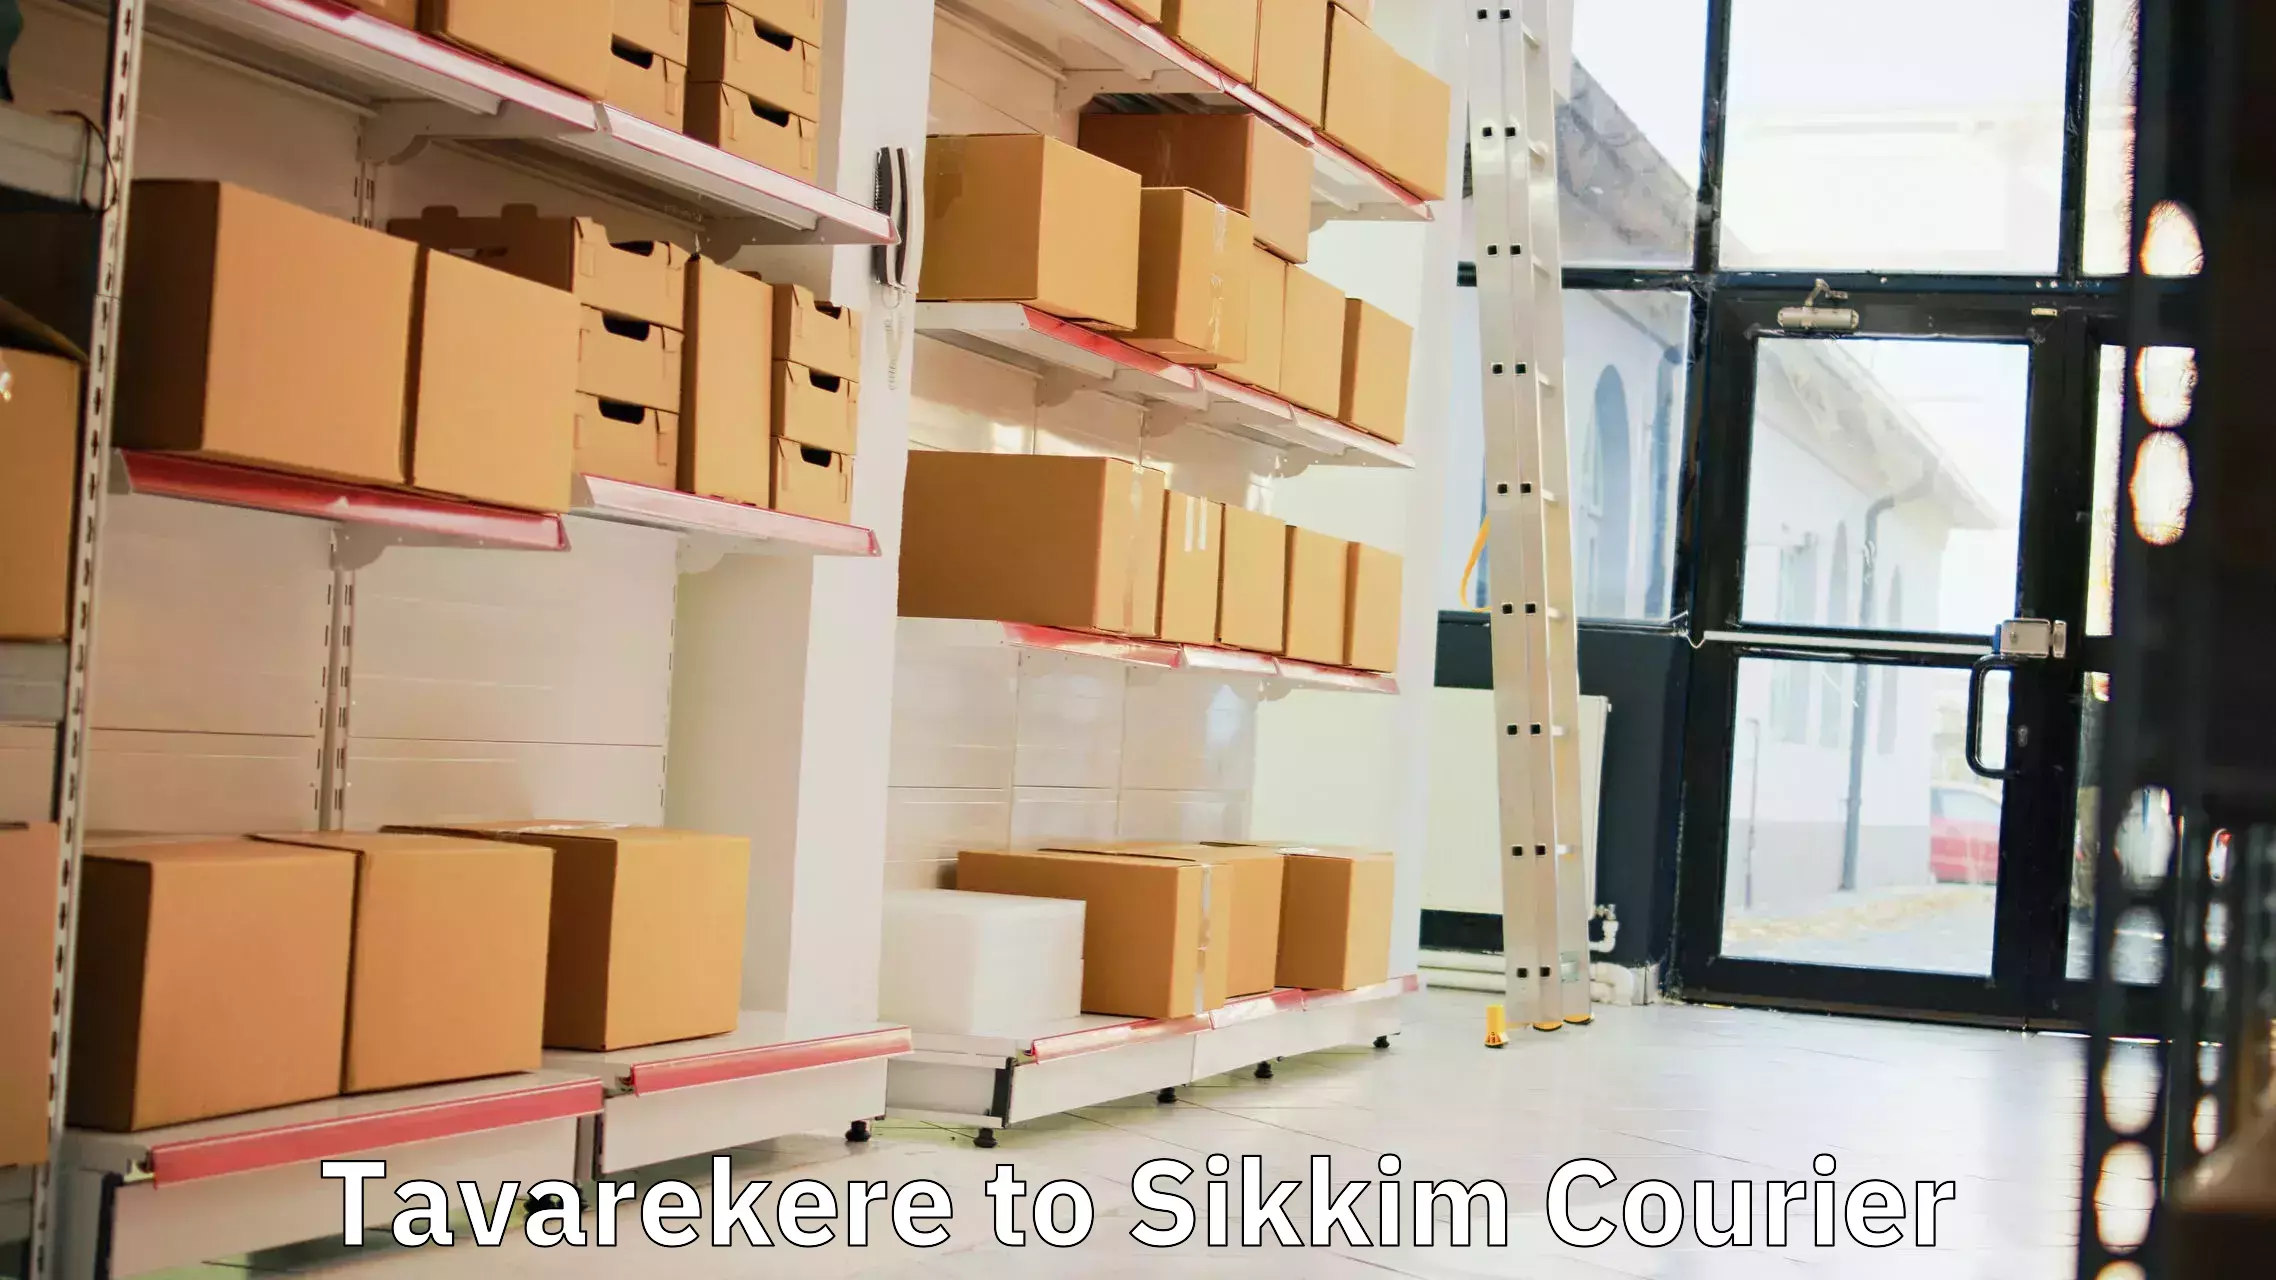 Express logistics providers Tavarekere to NIT Sikkim